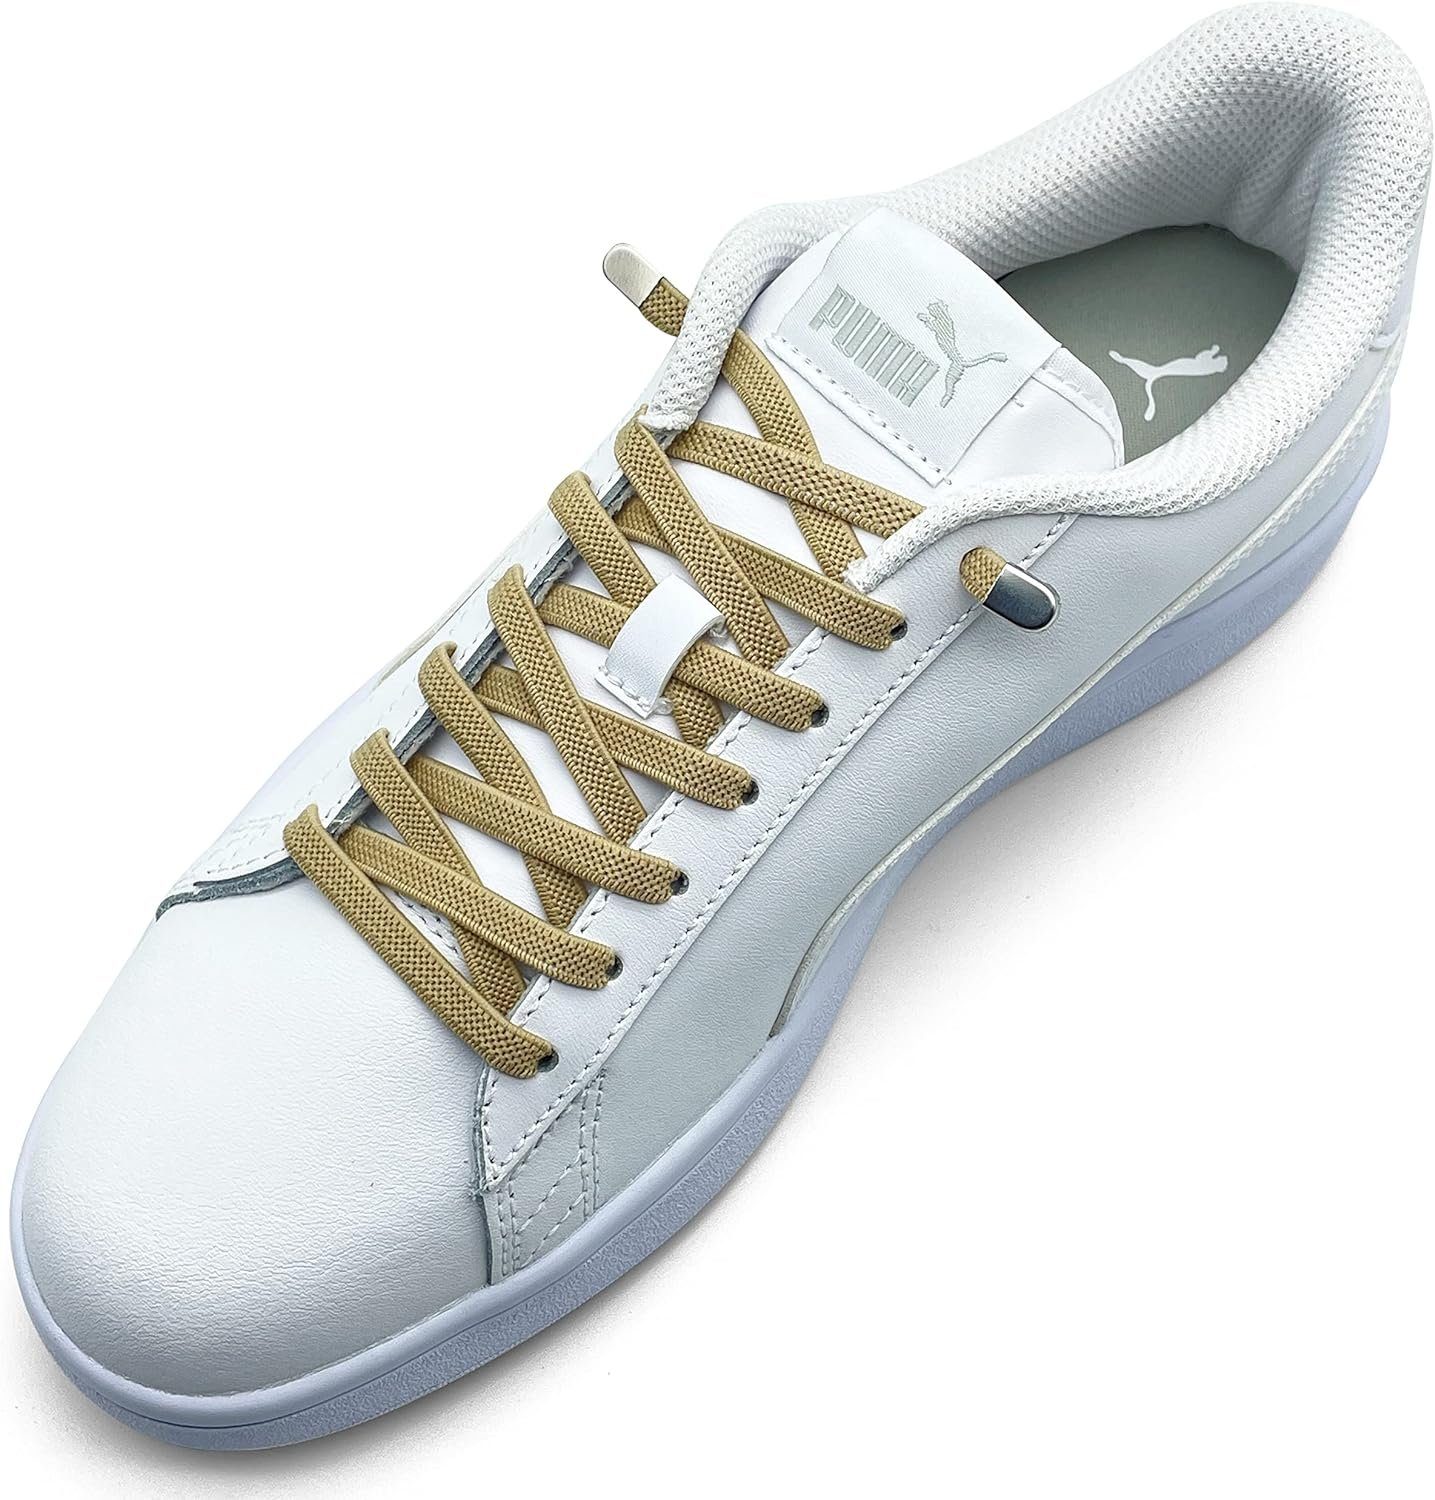 ELANOX Schnürsenkel 4 Stück für 2 Paar Schuhe elastische Schnürsenkel mit Clips, inkl. Enden (Clips) - 8 St. in silber khaki